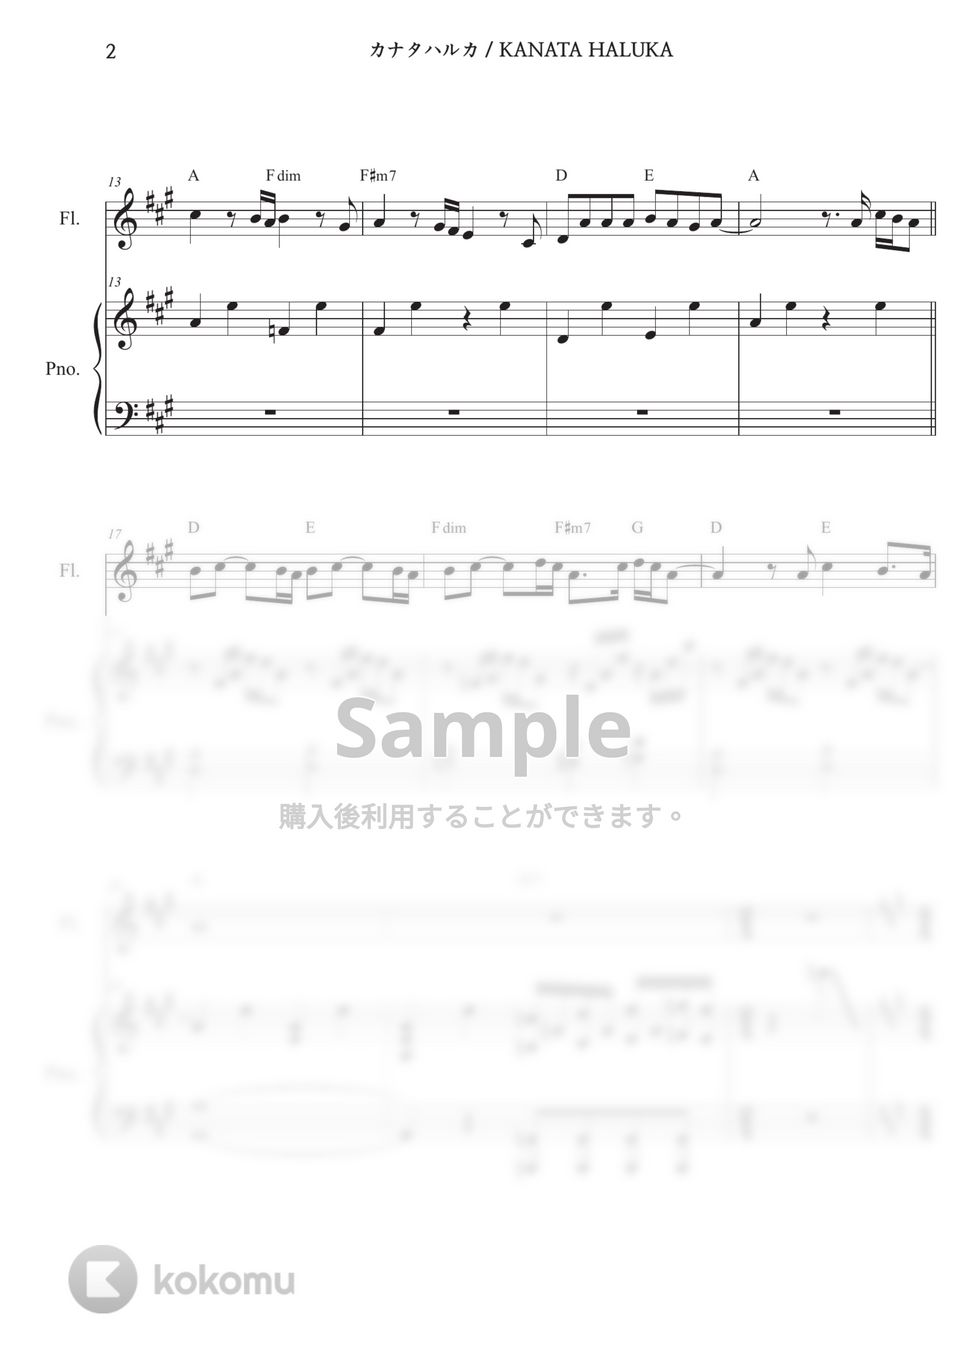 Radwimps - カナタハルカ (Ensemble) by Melonical